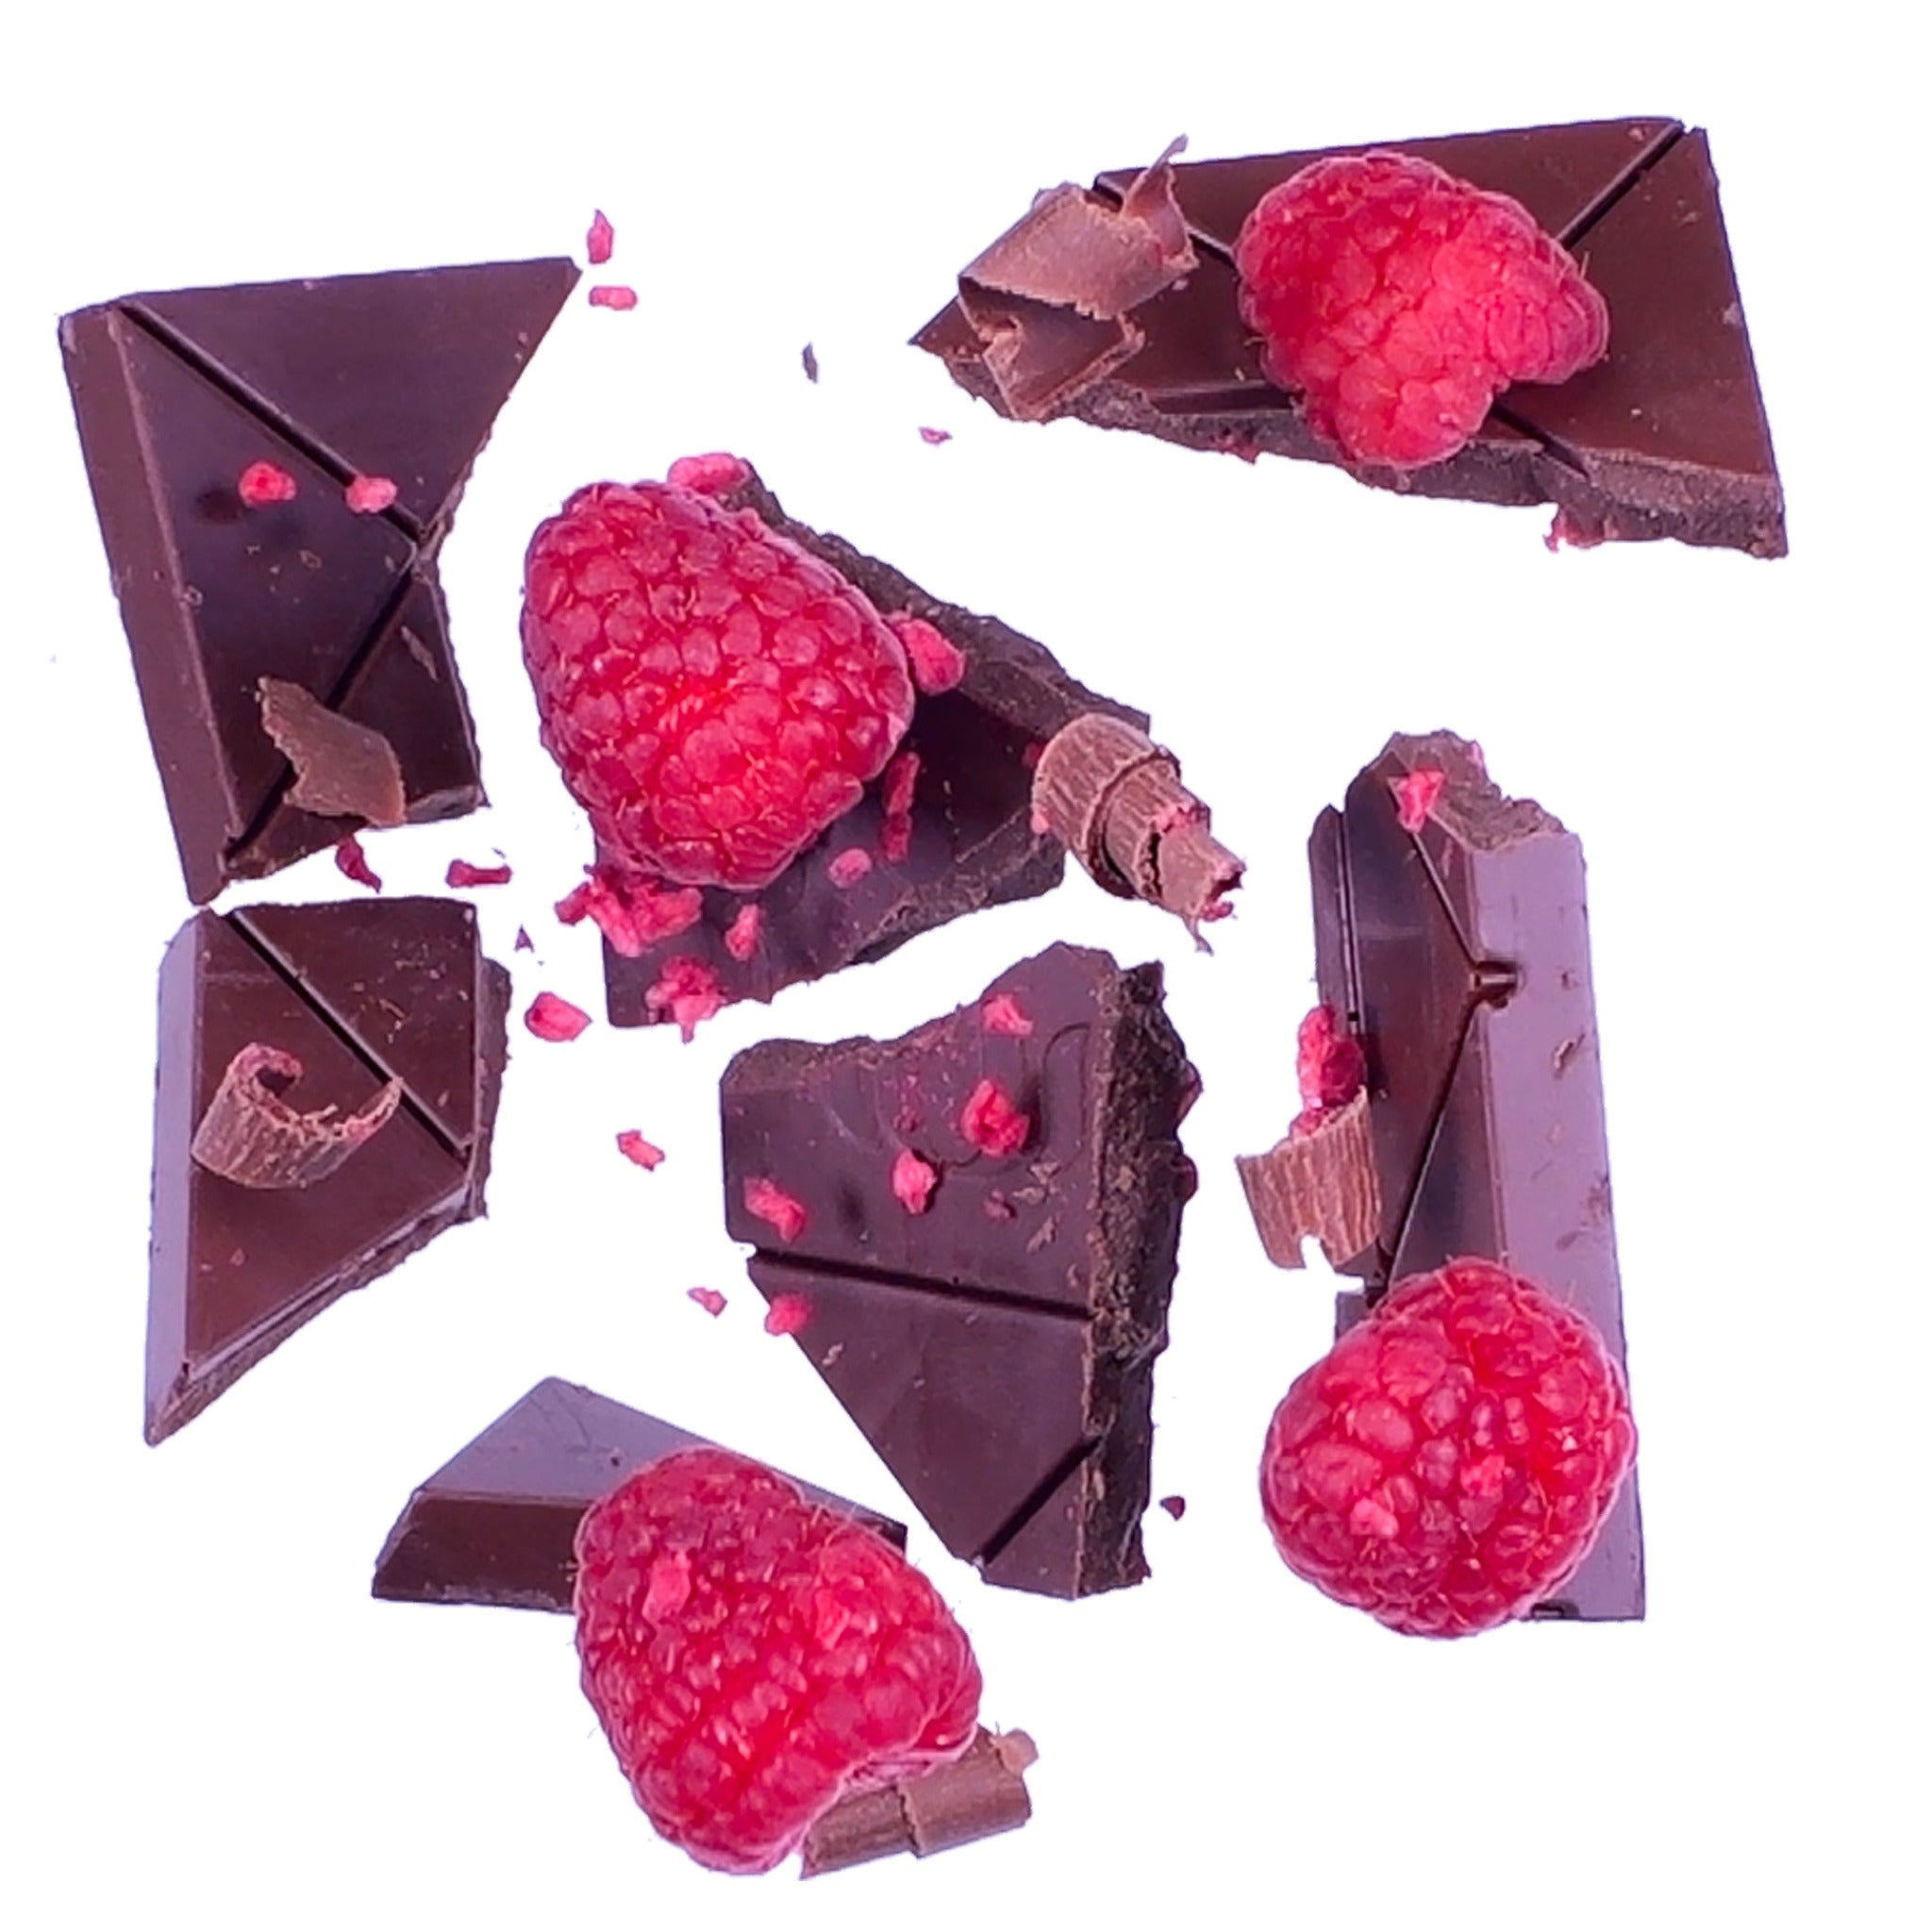 Goodio organic vegan Raspberry chocolate